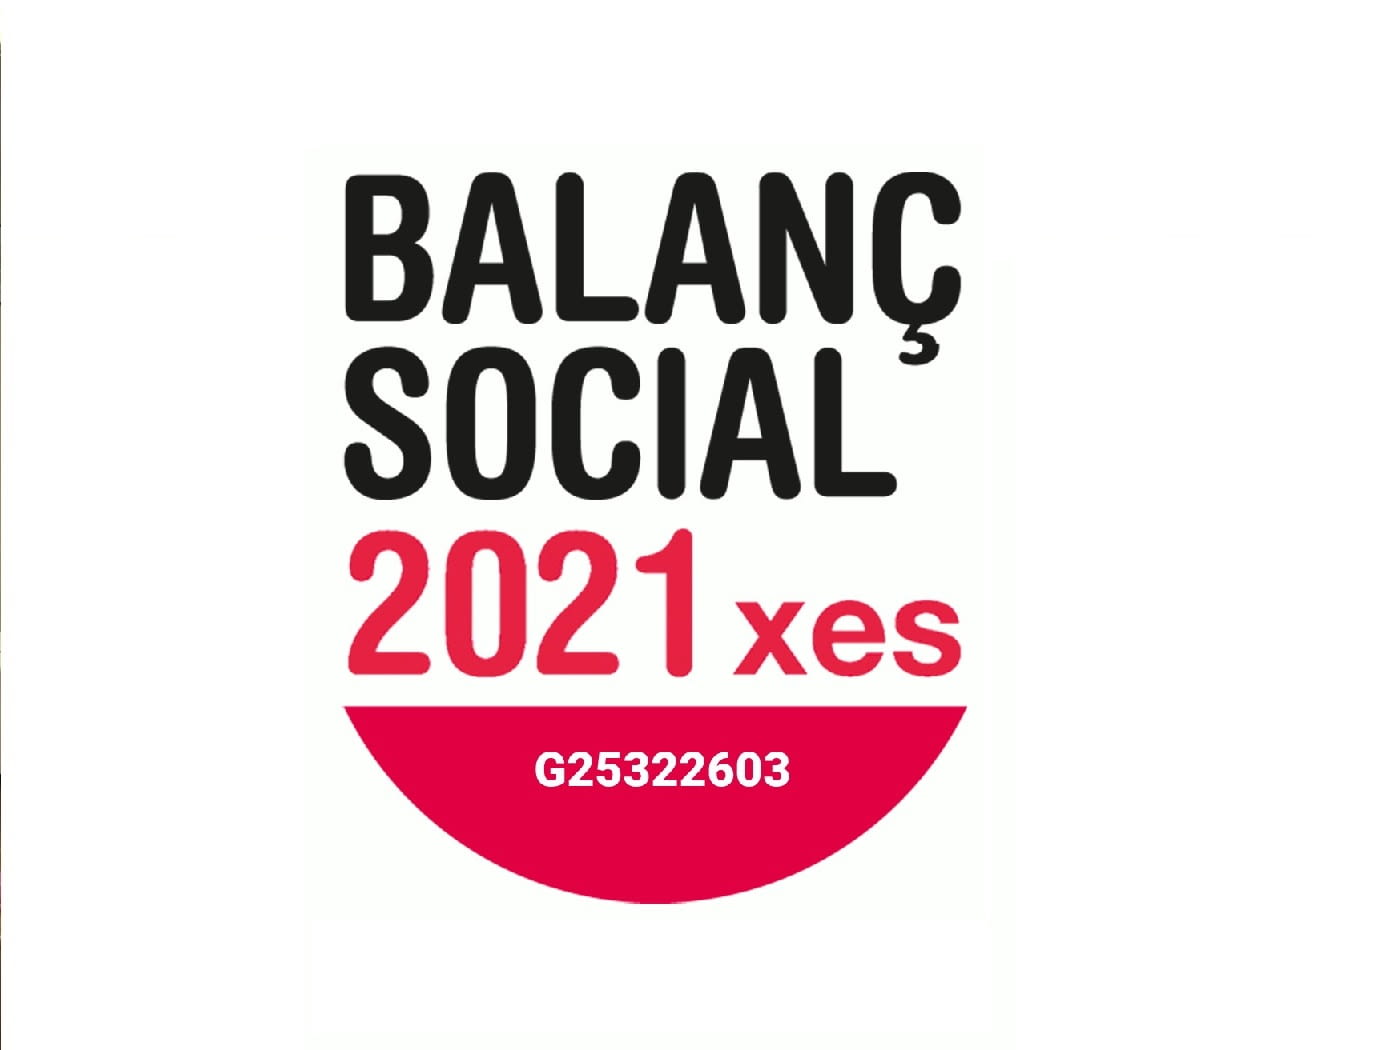 Renovem el compromís i la nostra acreditació amb Balanç Social 2021